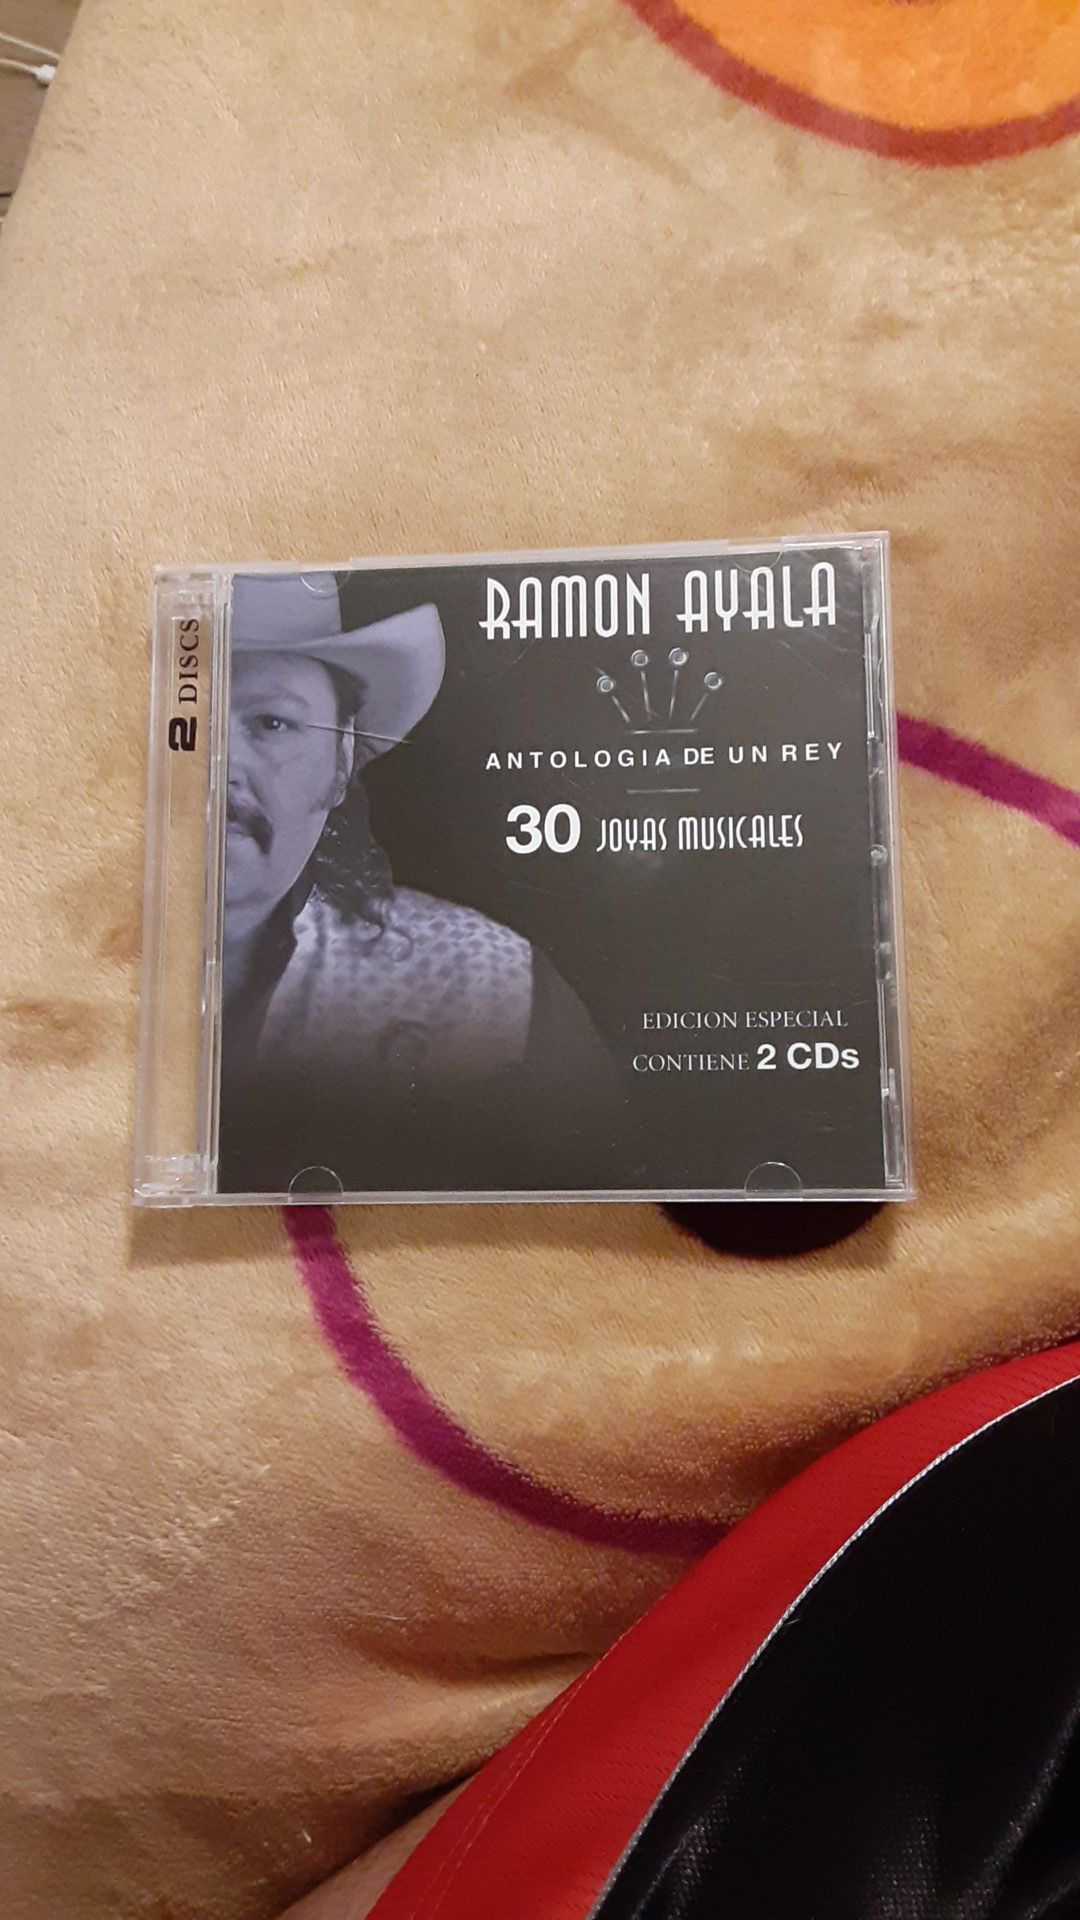 Ramona ayala 2 cds